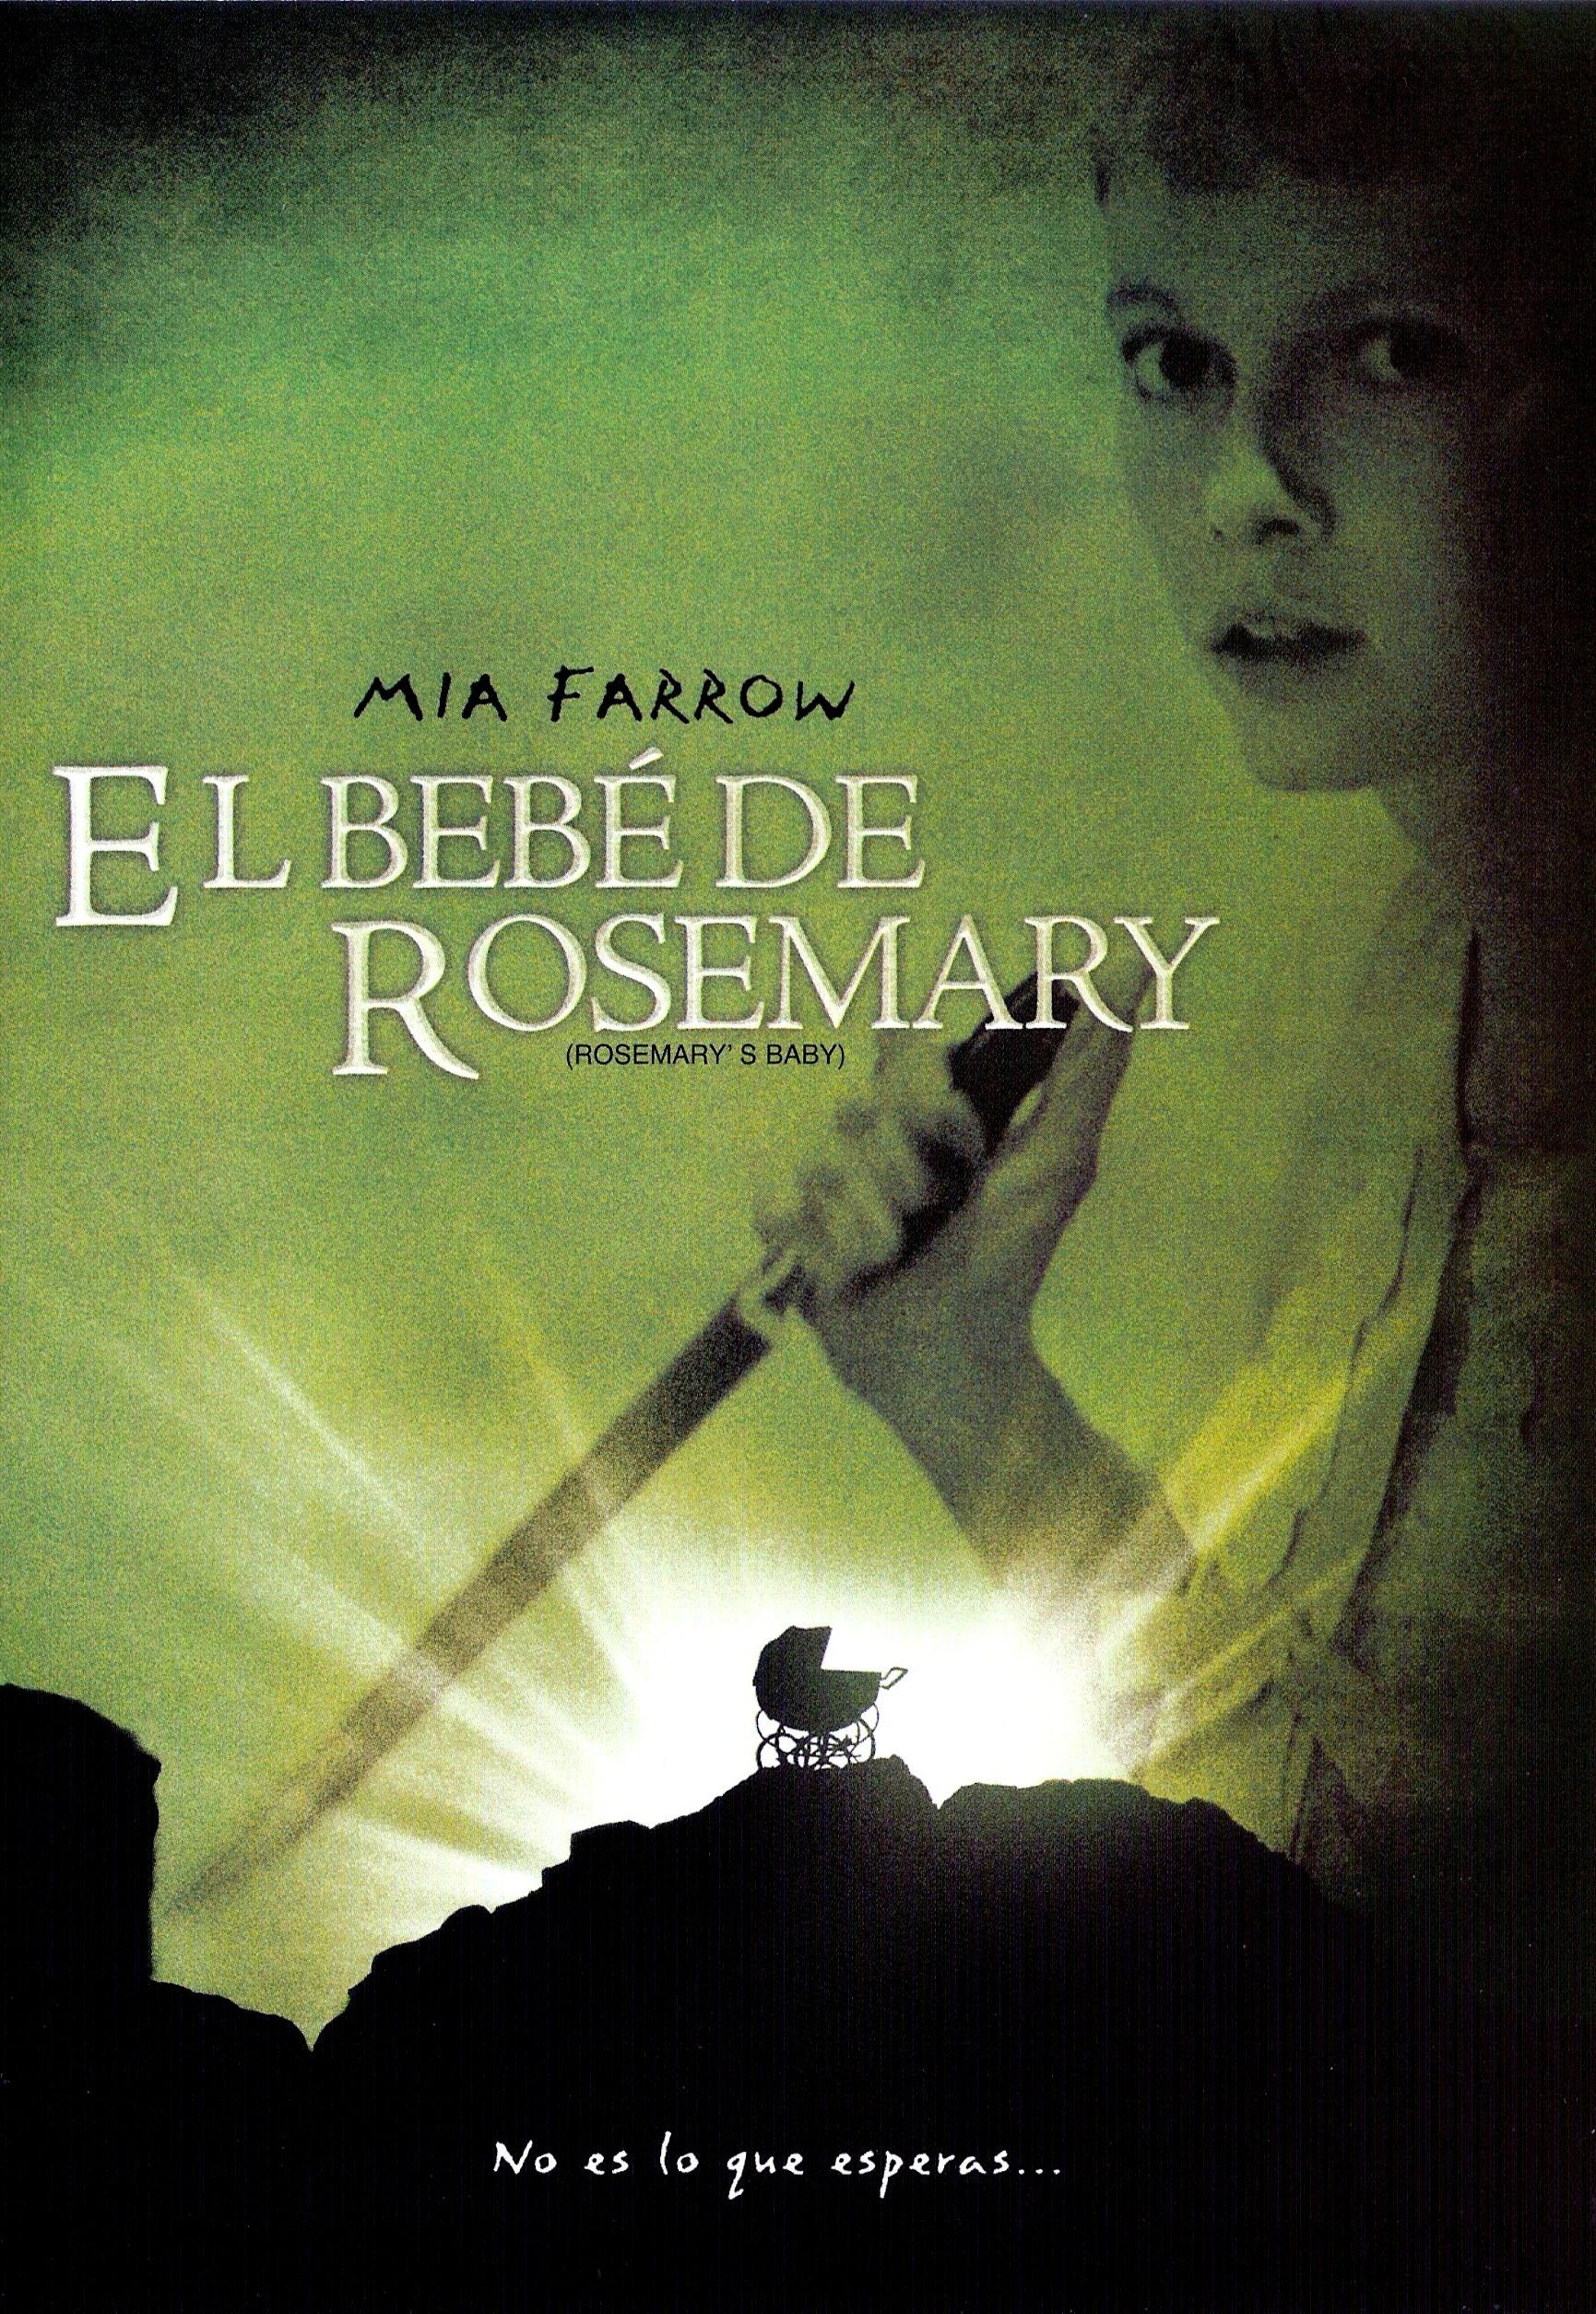 Cartel de la cinta "Rosemary's Baby".